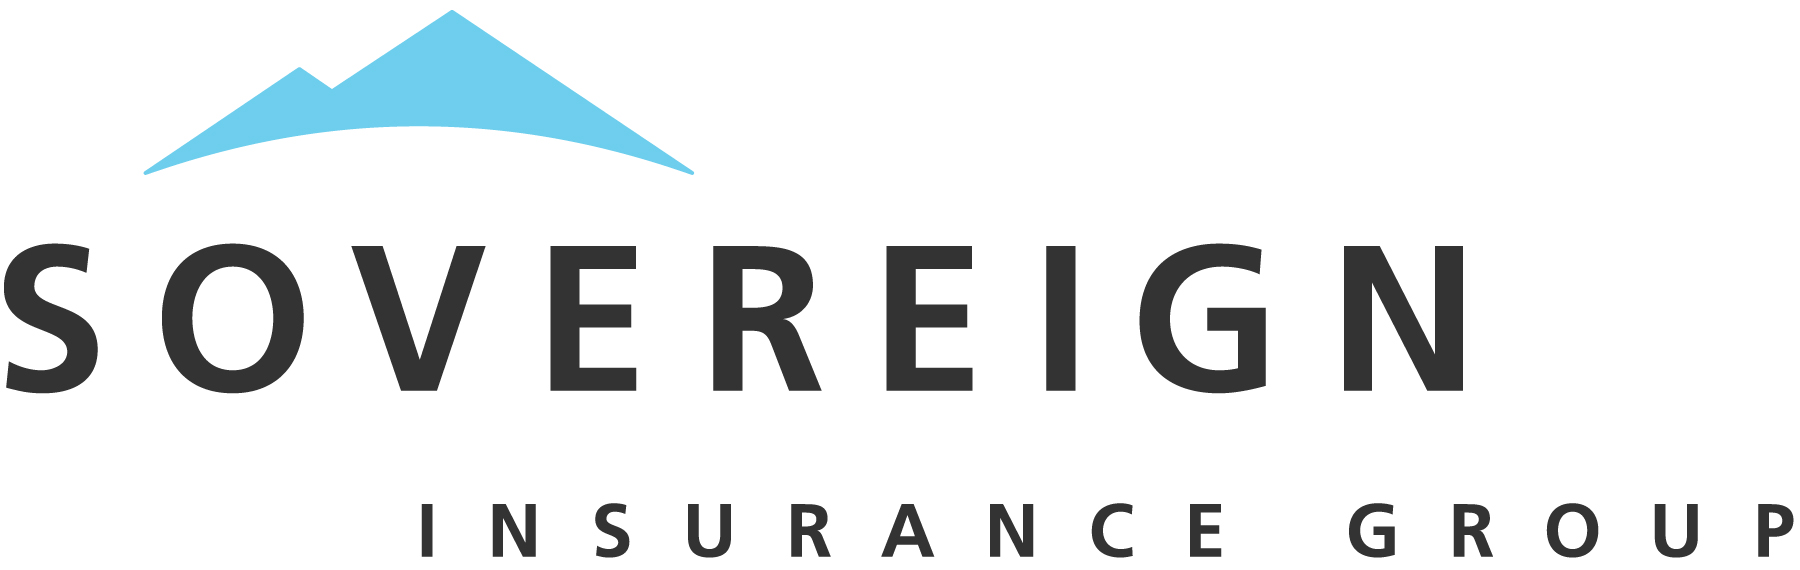 Sovereign Insurance